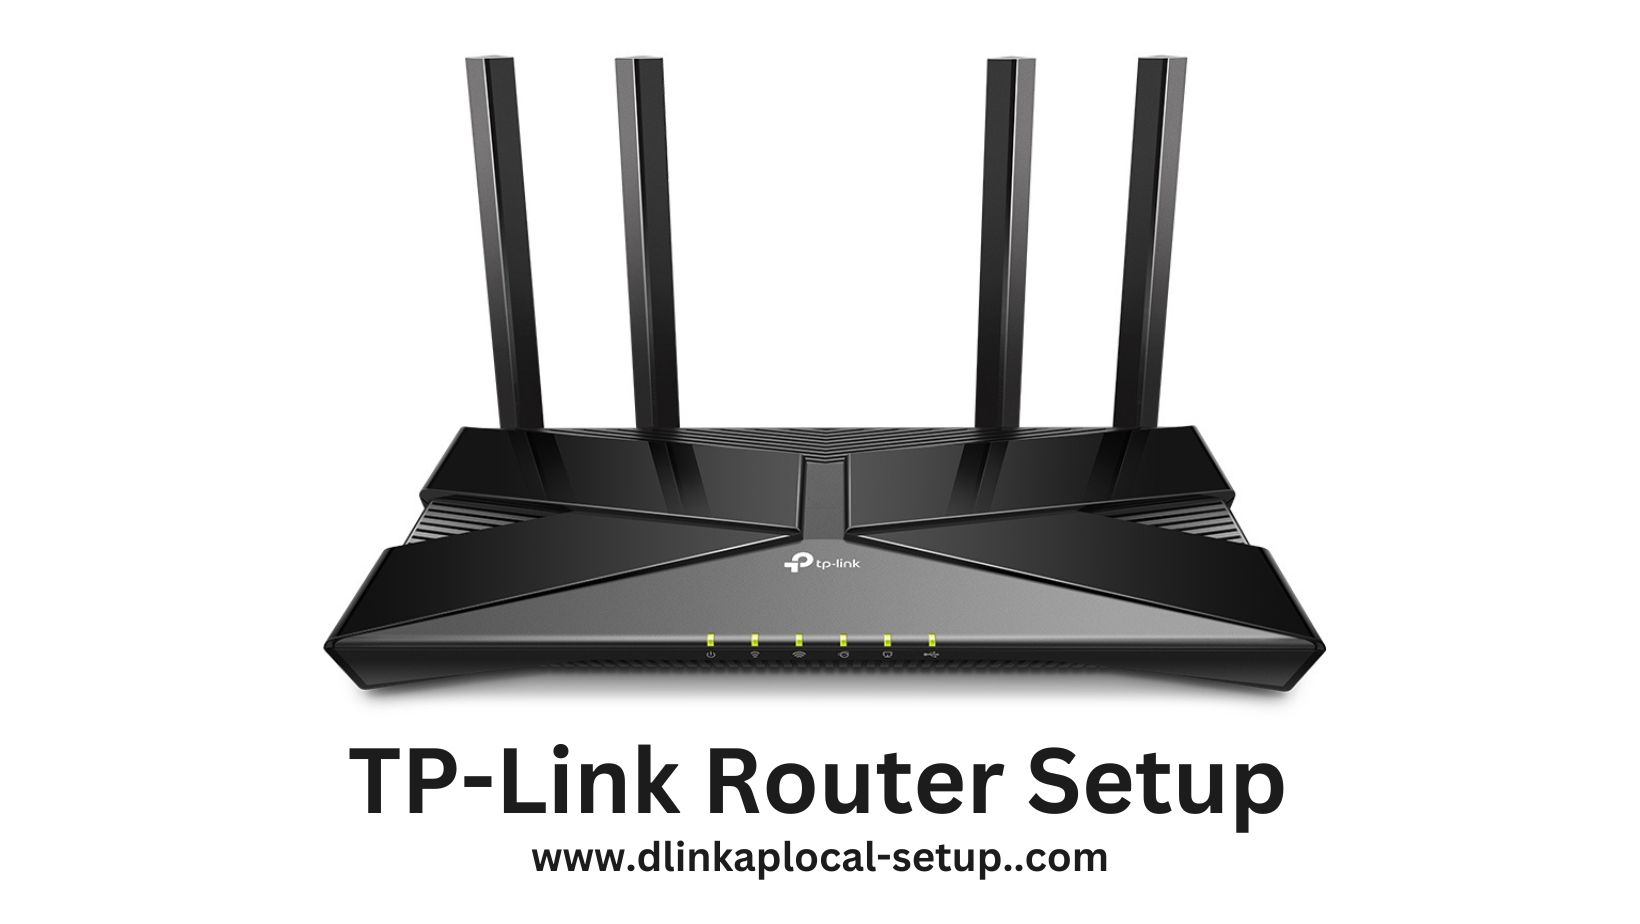 TP-Link Router Setup